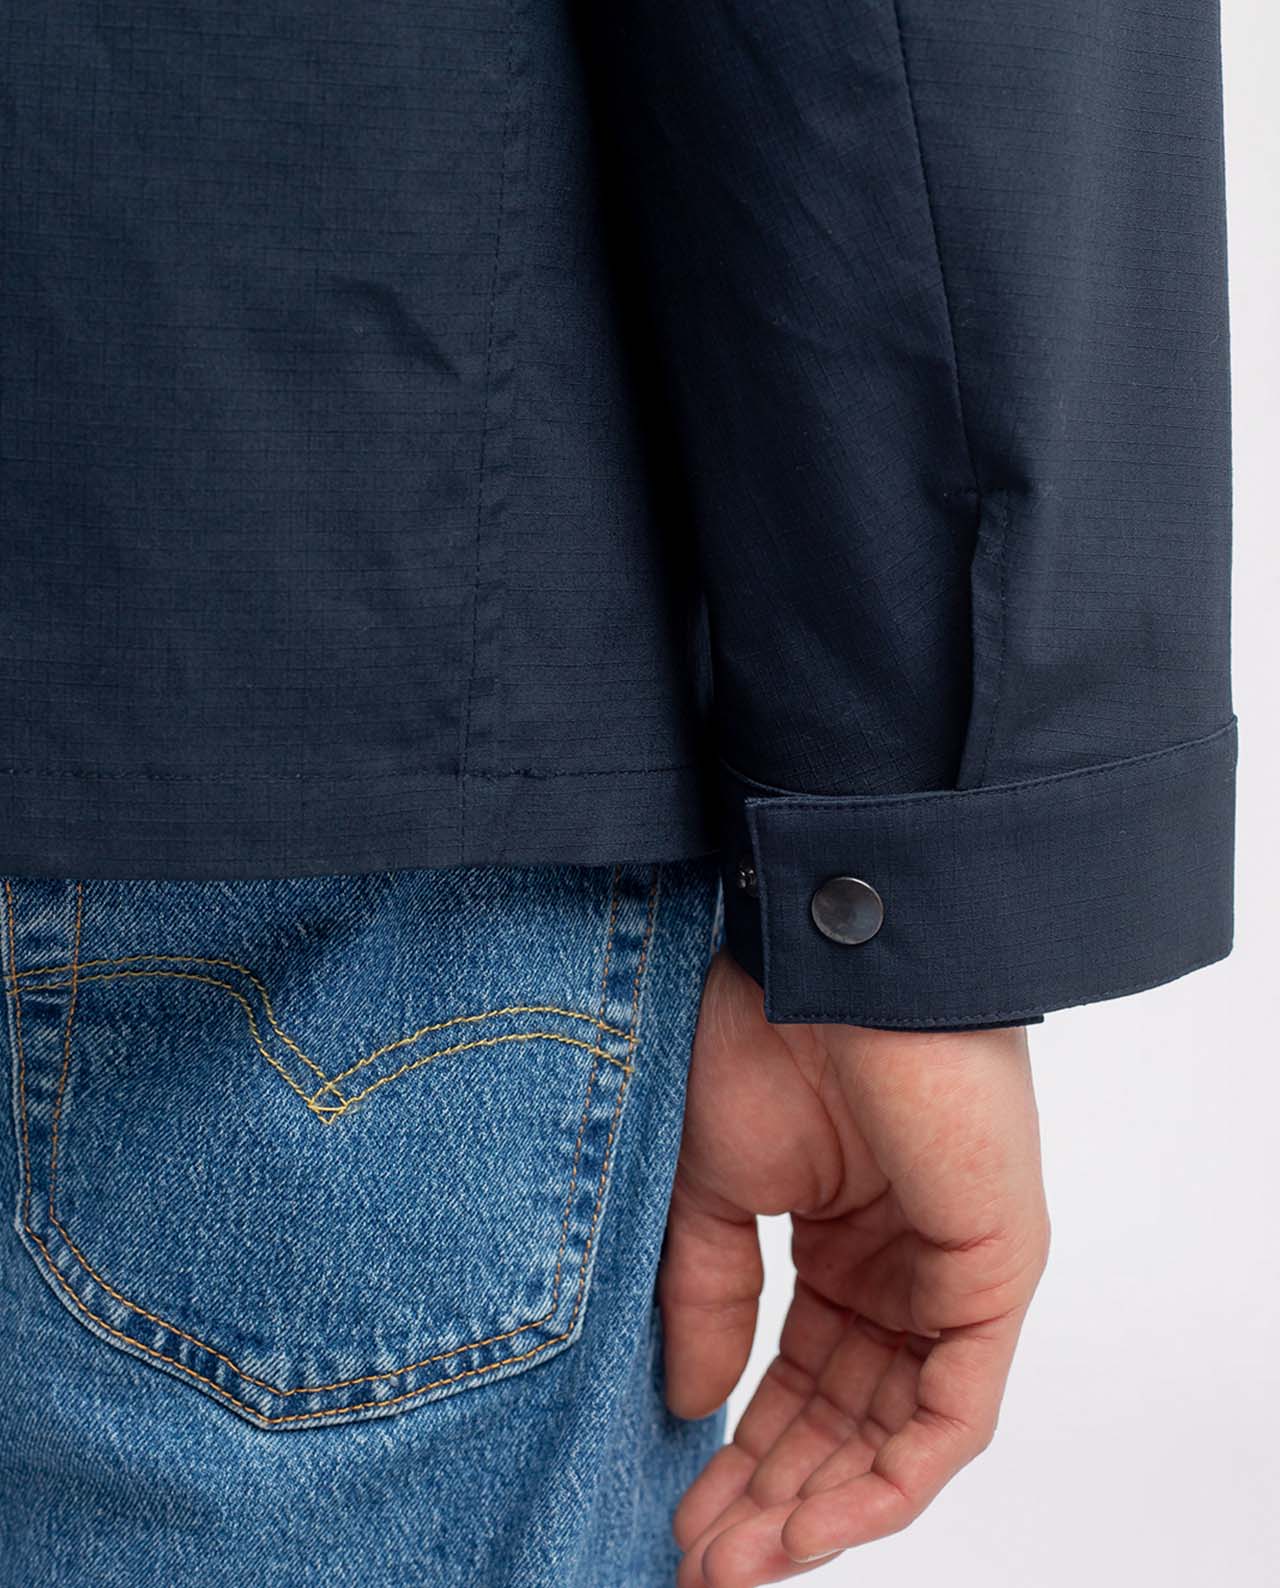 marché commun rotholz veste homme courte coton biologique éco-responsable éthique fabriquée en Europe bleu marine